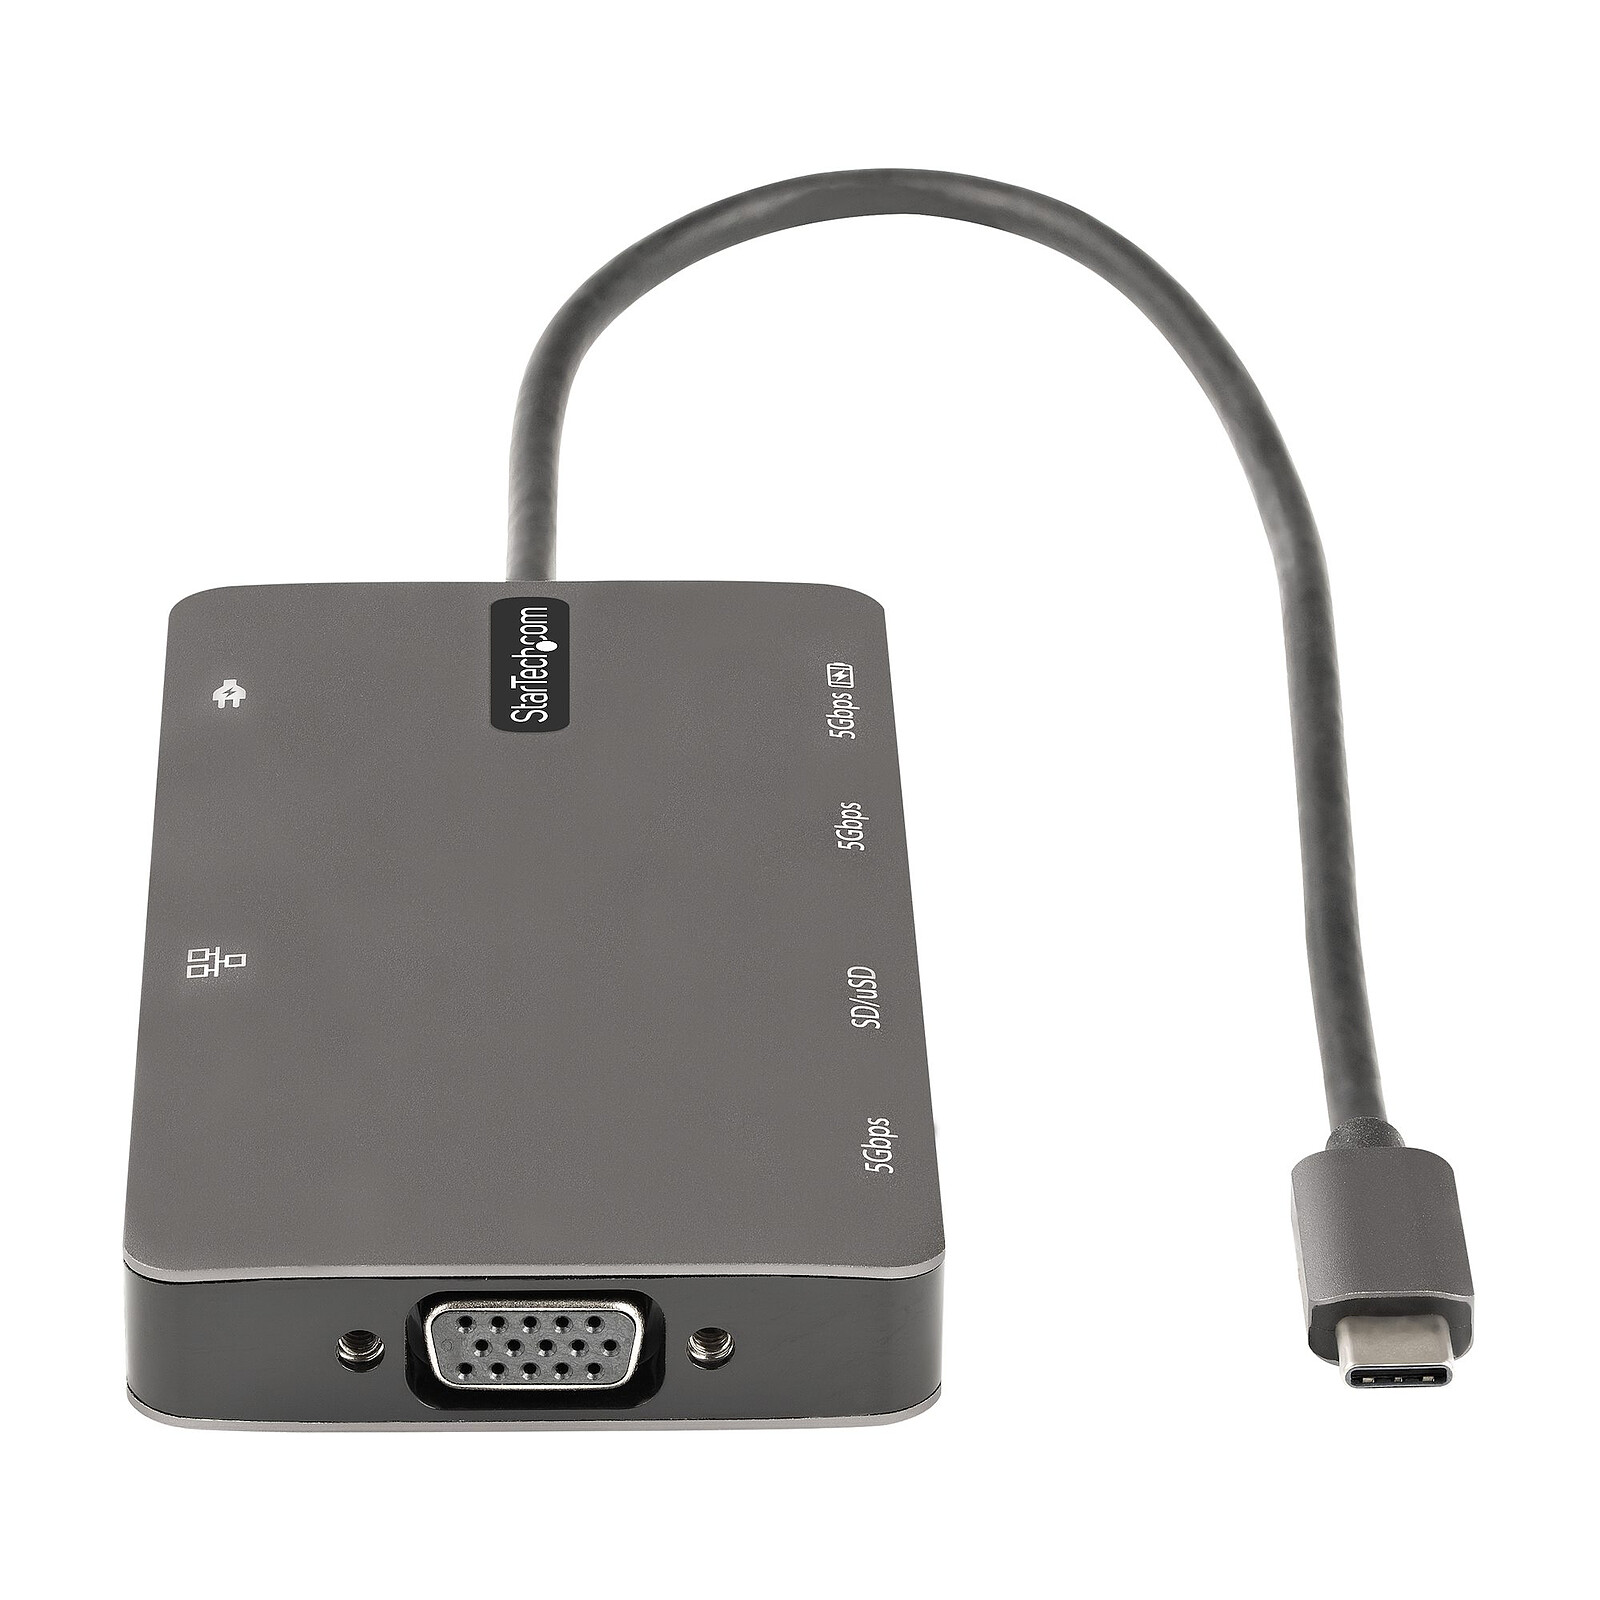 Hub USB-C - 2 port USB-A + USB-C + lecteur carte SD - Câble USB  StarTech.com sur